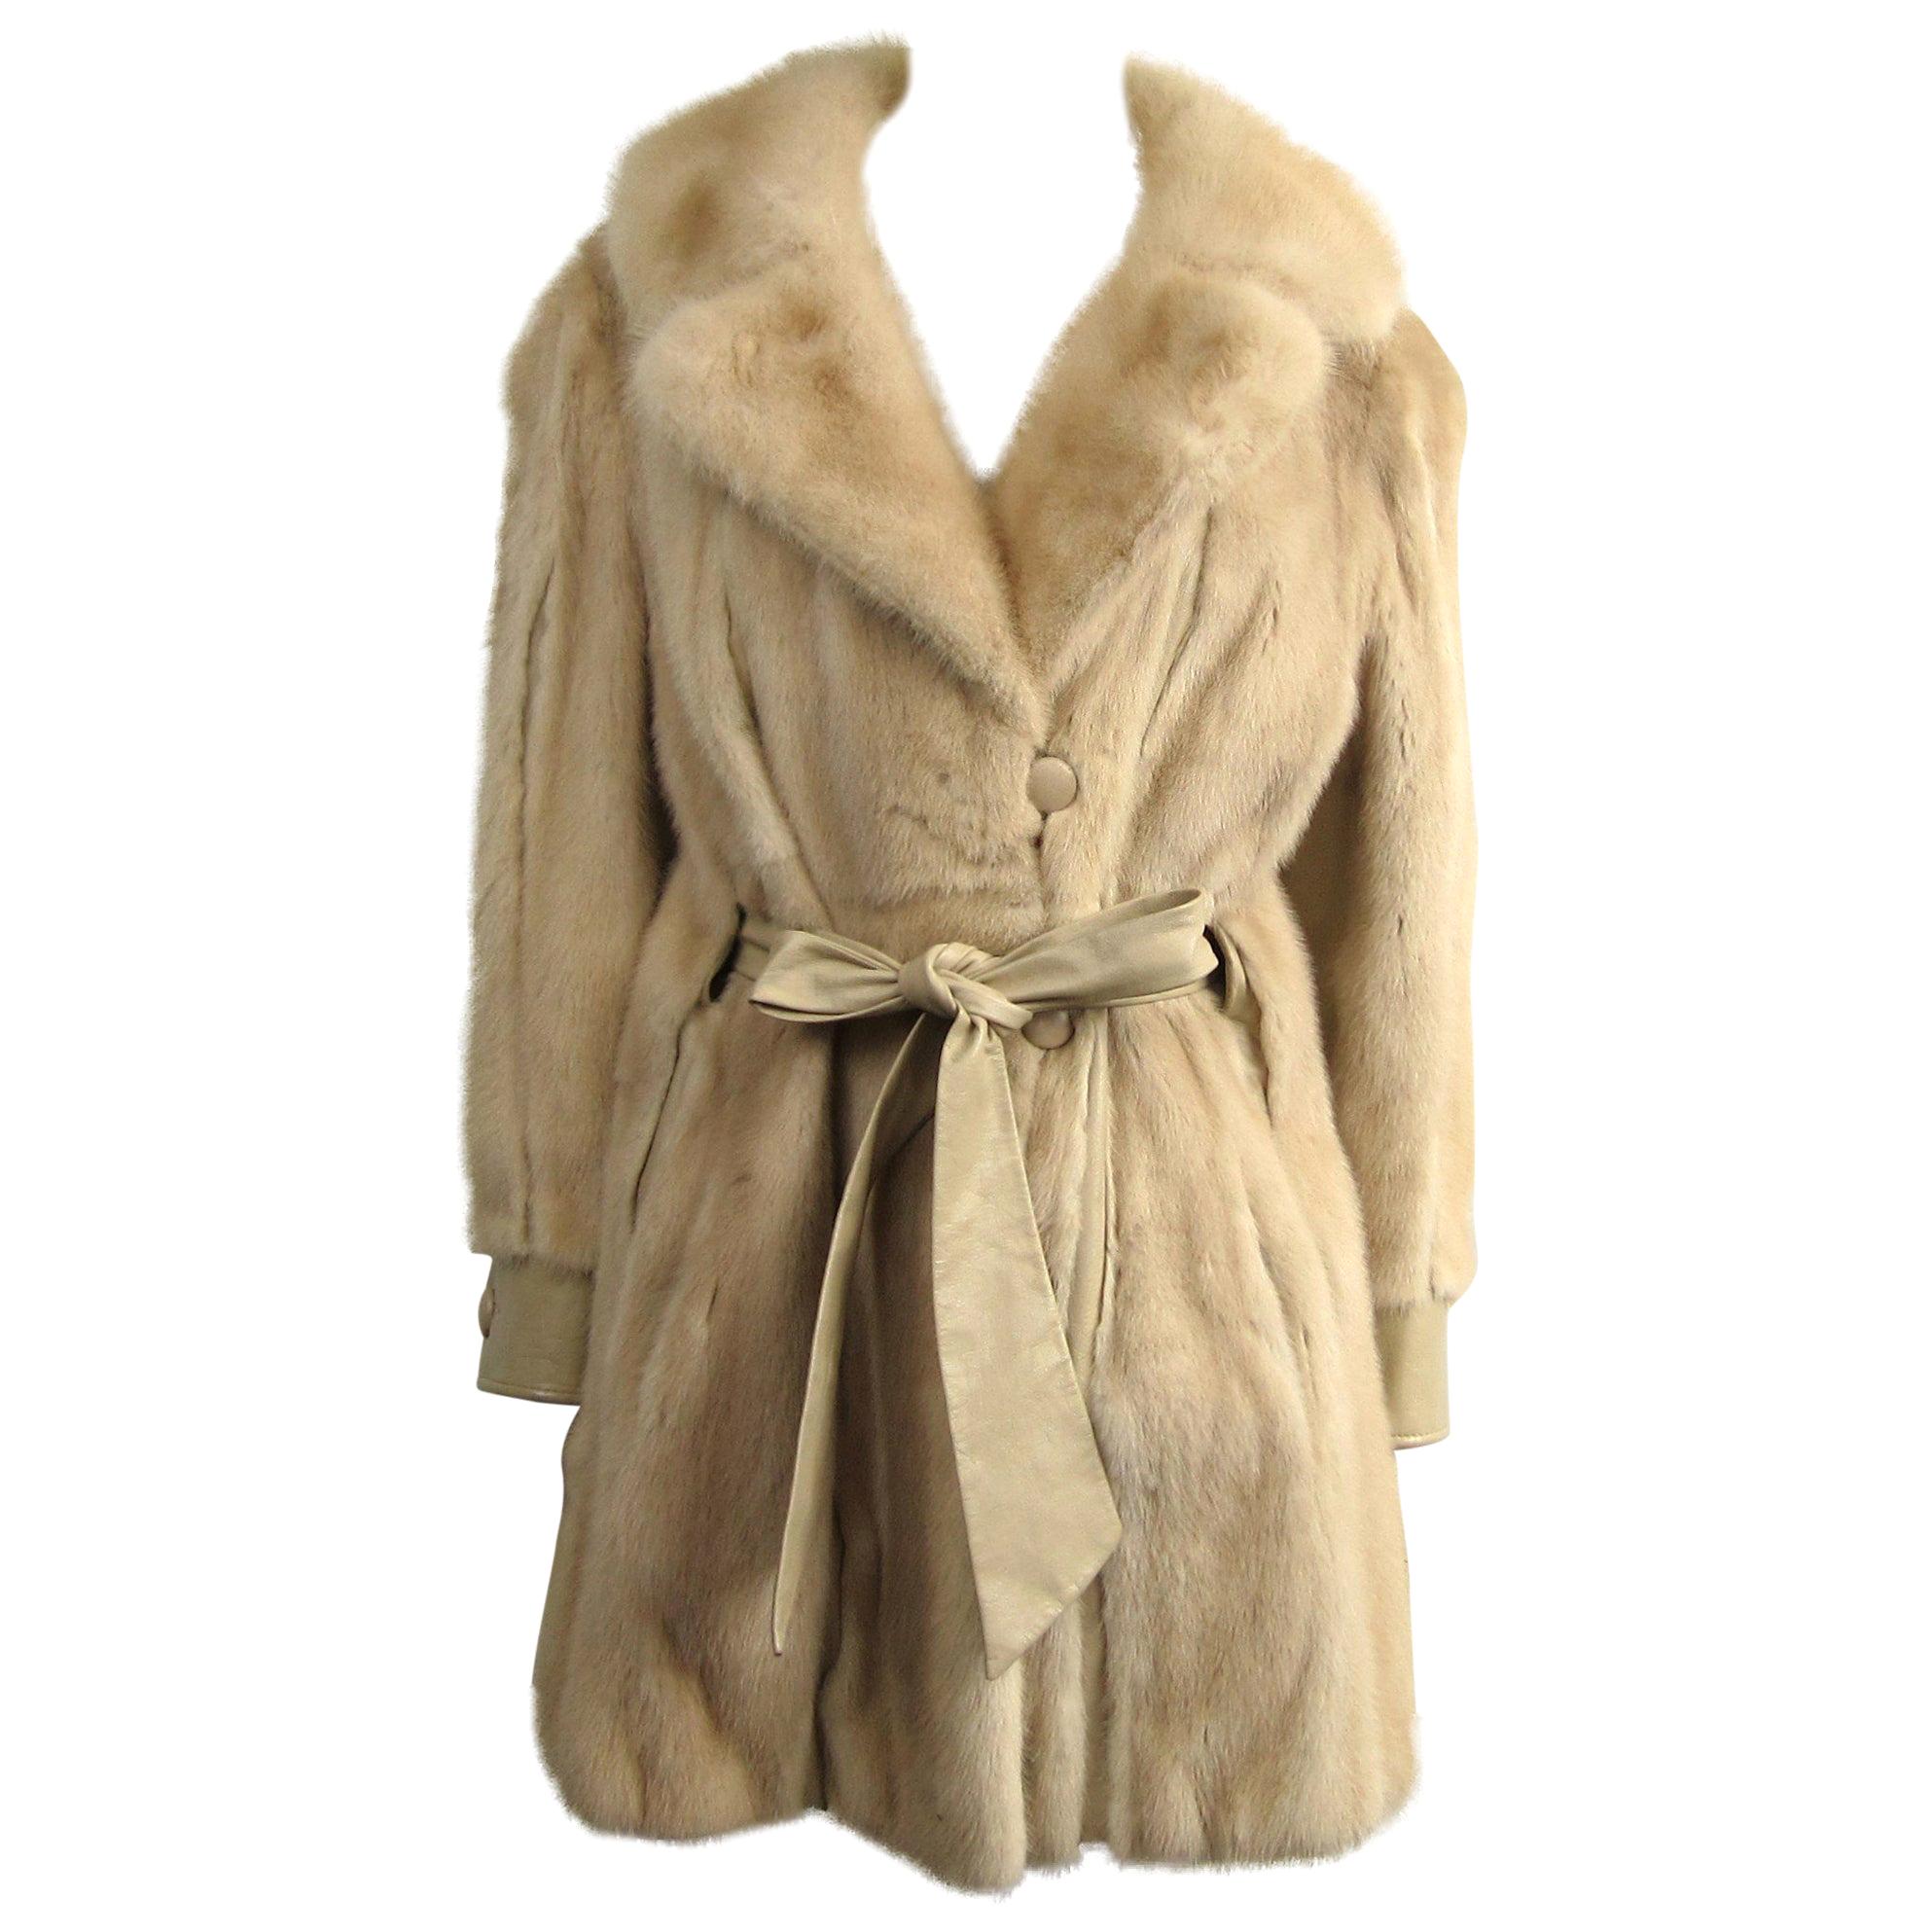 Mink Fur Cream Jacket Large Coat - Vintage 1970's Mod